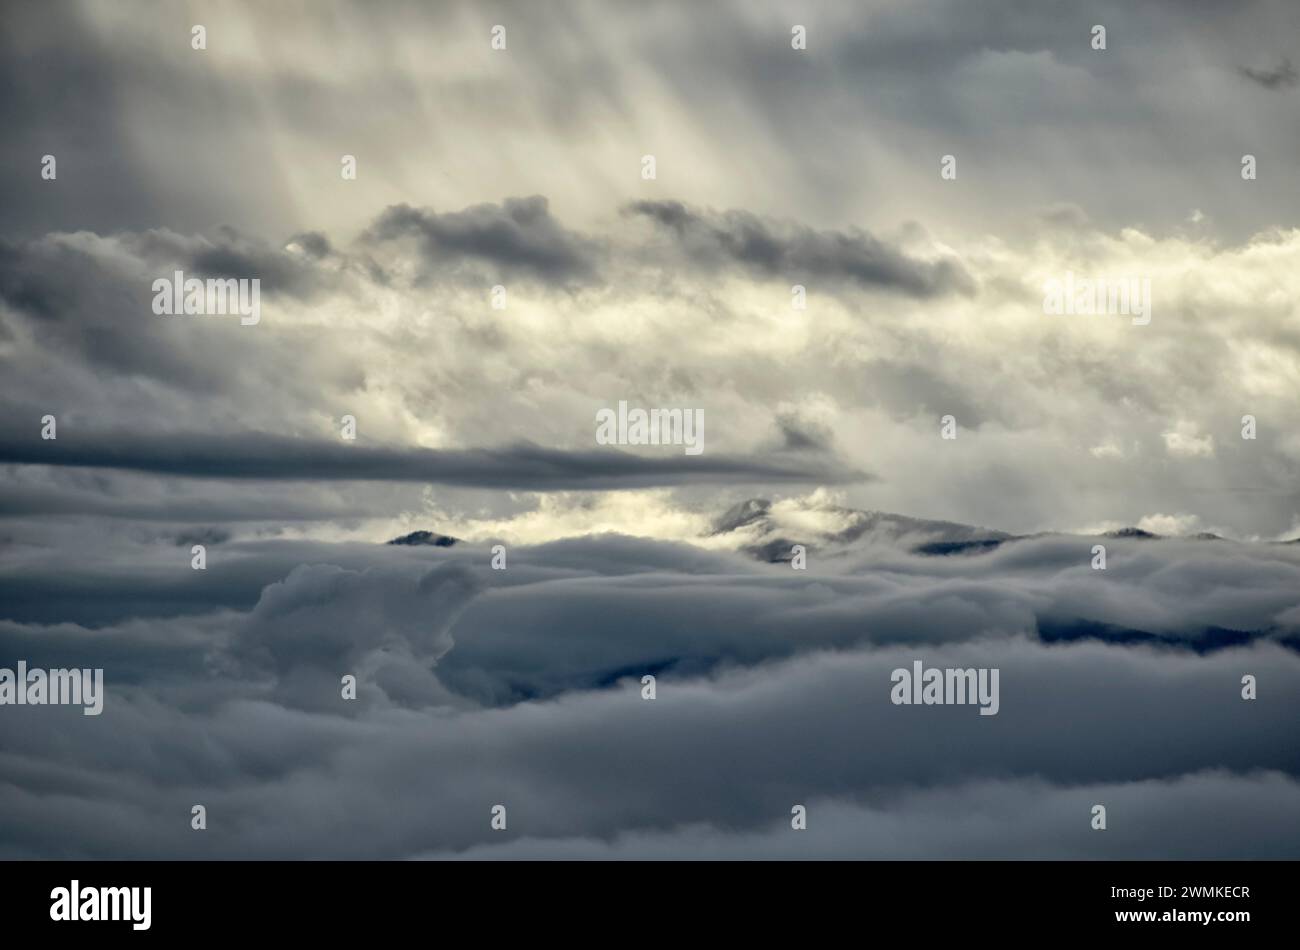 La luce del sole splende attraverso le nuvole su un mare di nuvole sottostanti; Fairview, North Carolina, Stati Uniti d'America Foto Stock